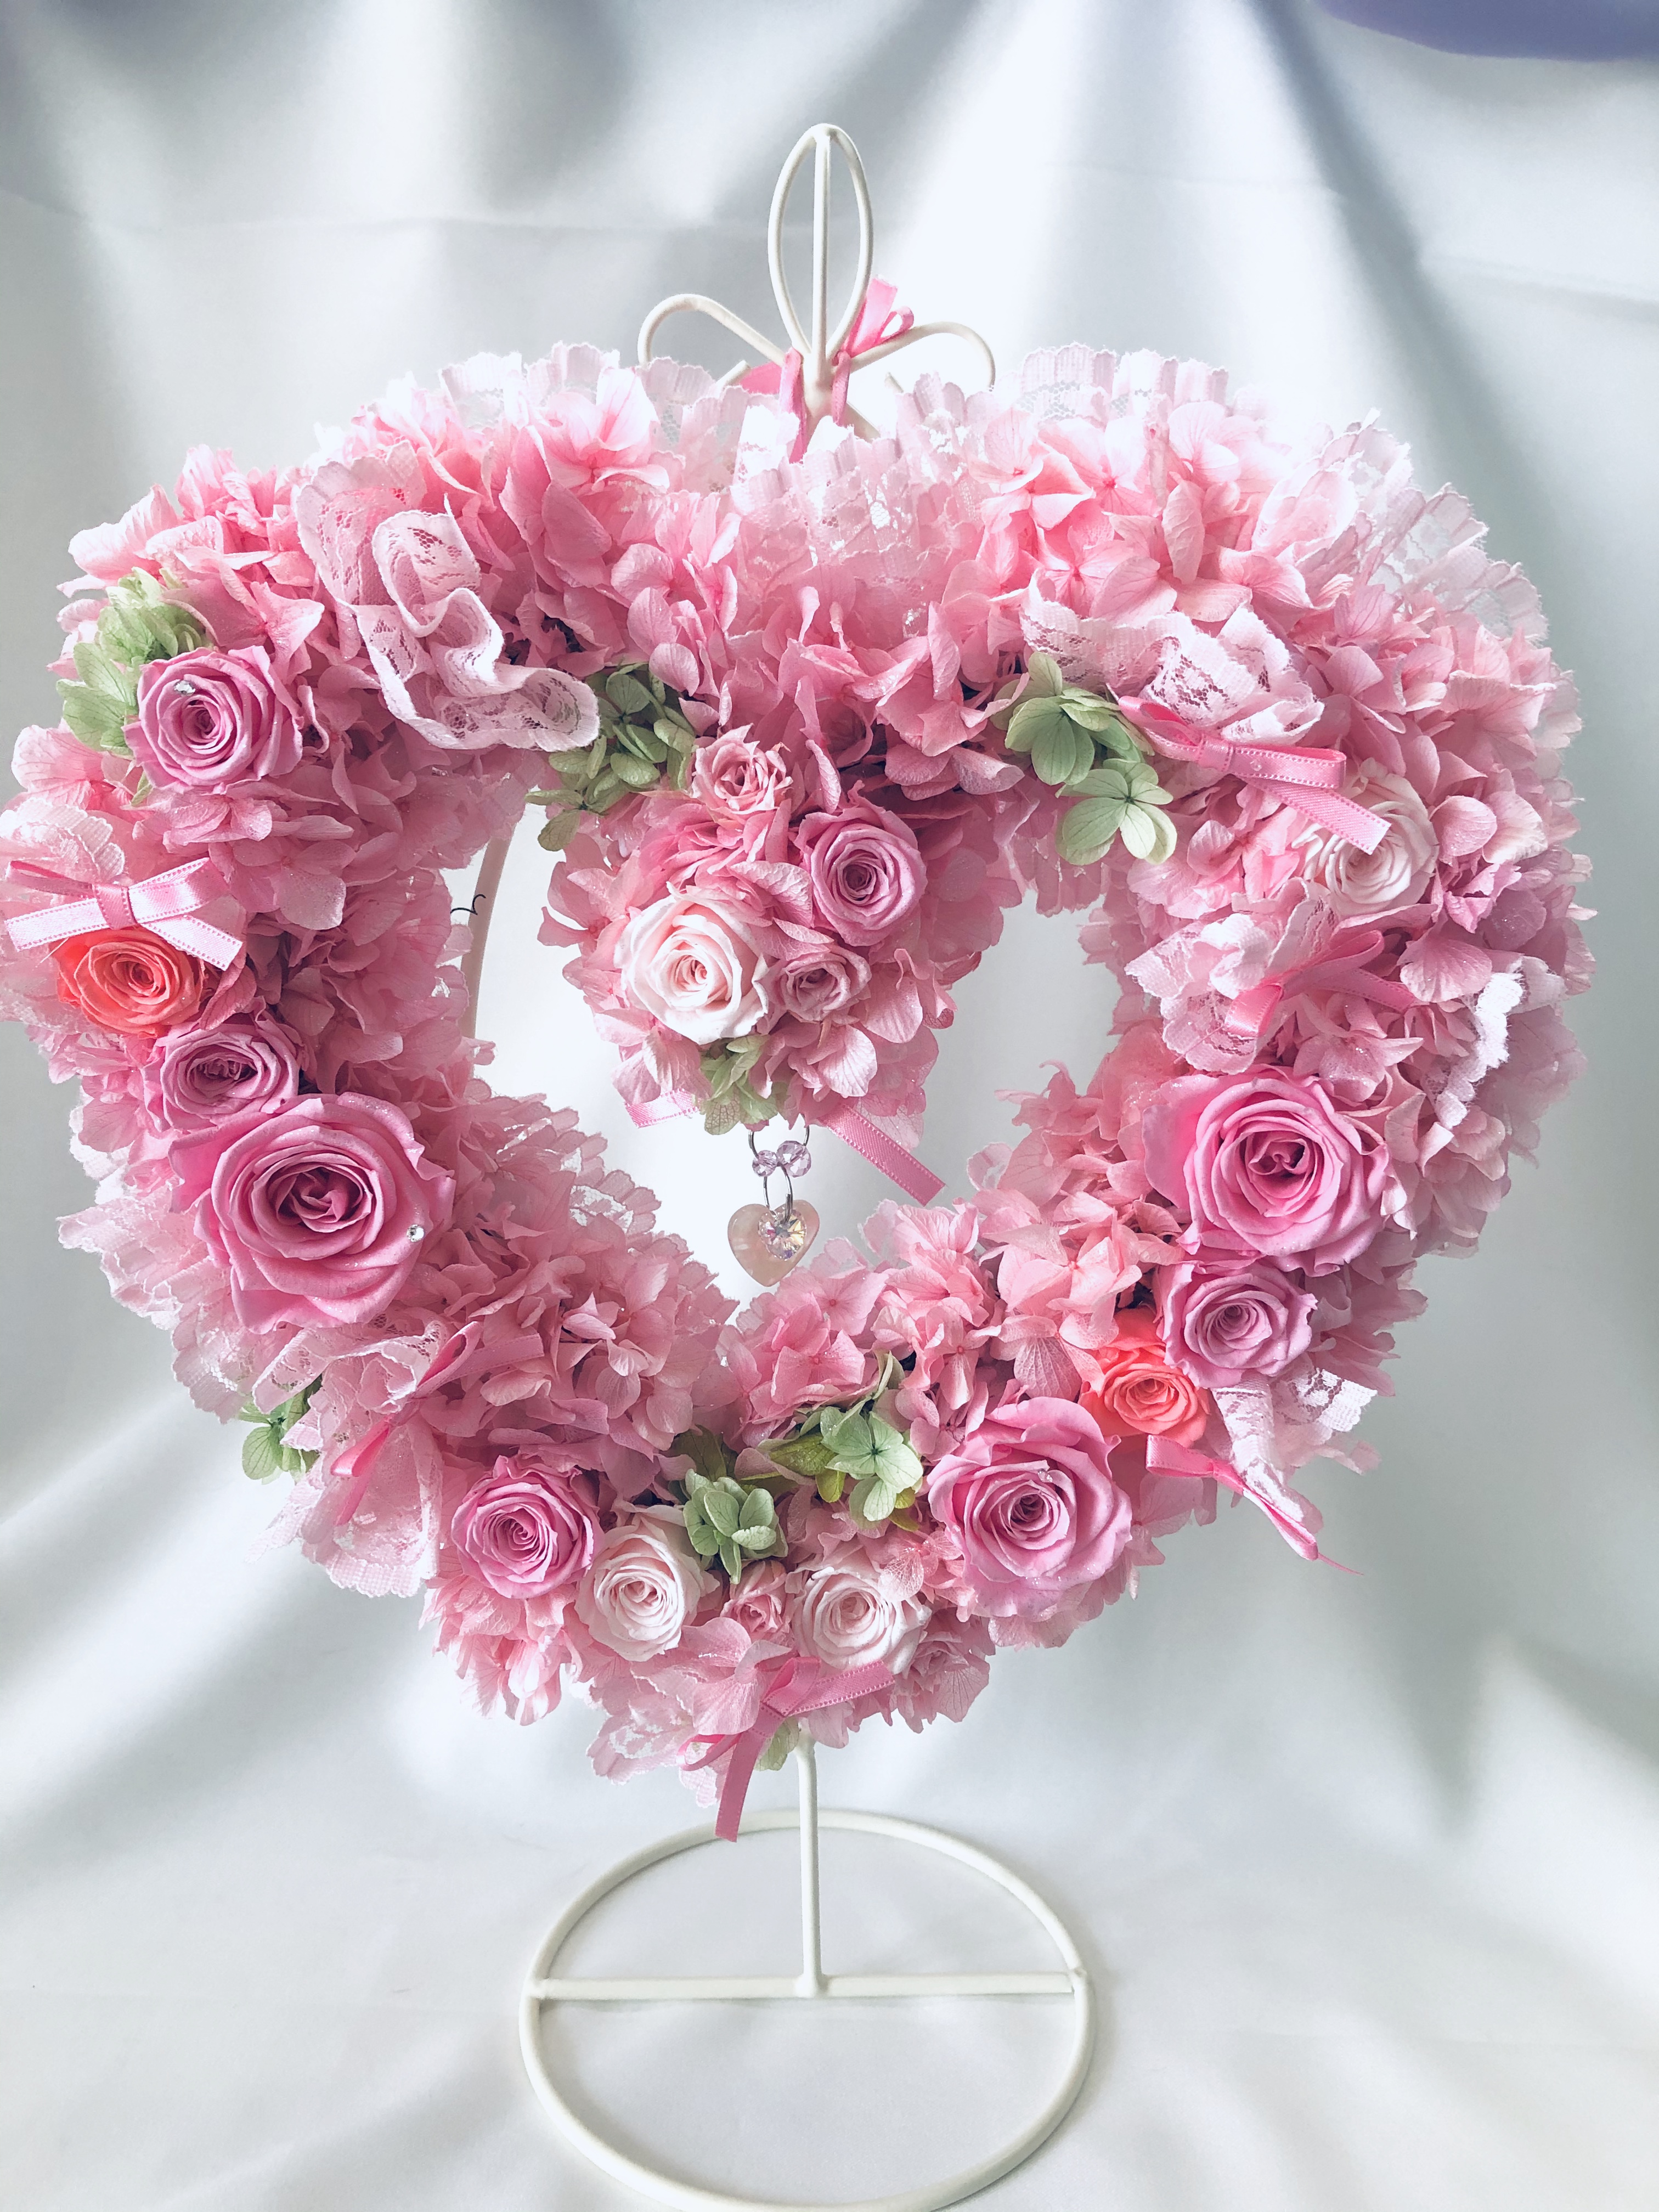 プリザーブドフラワー ハートリースアレンジ ピンク色の薔薇たちがハートのかたちに込めた愛のメッセージ Iichi ハンドメイド クラフト作品 手仕事品の通販